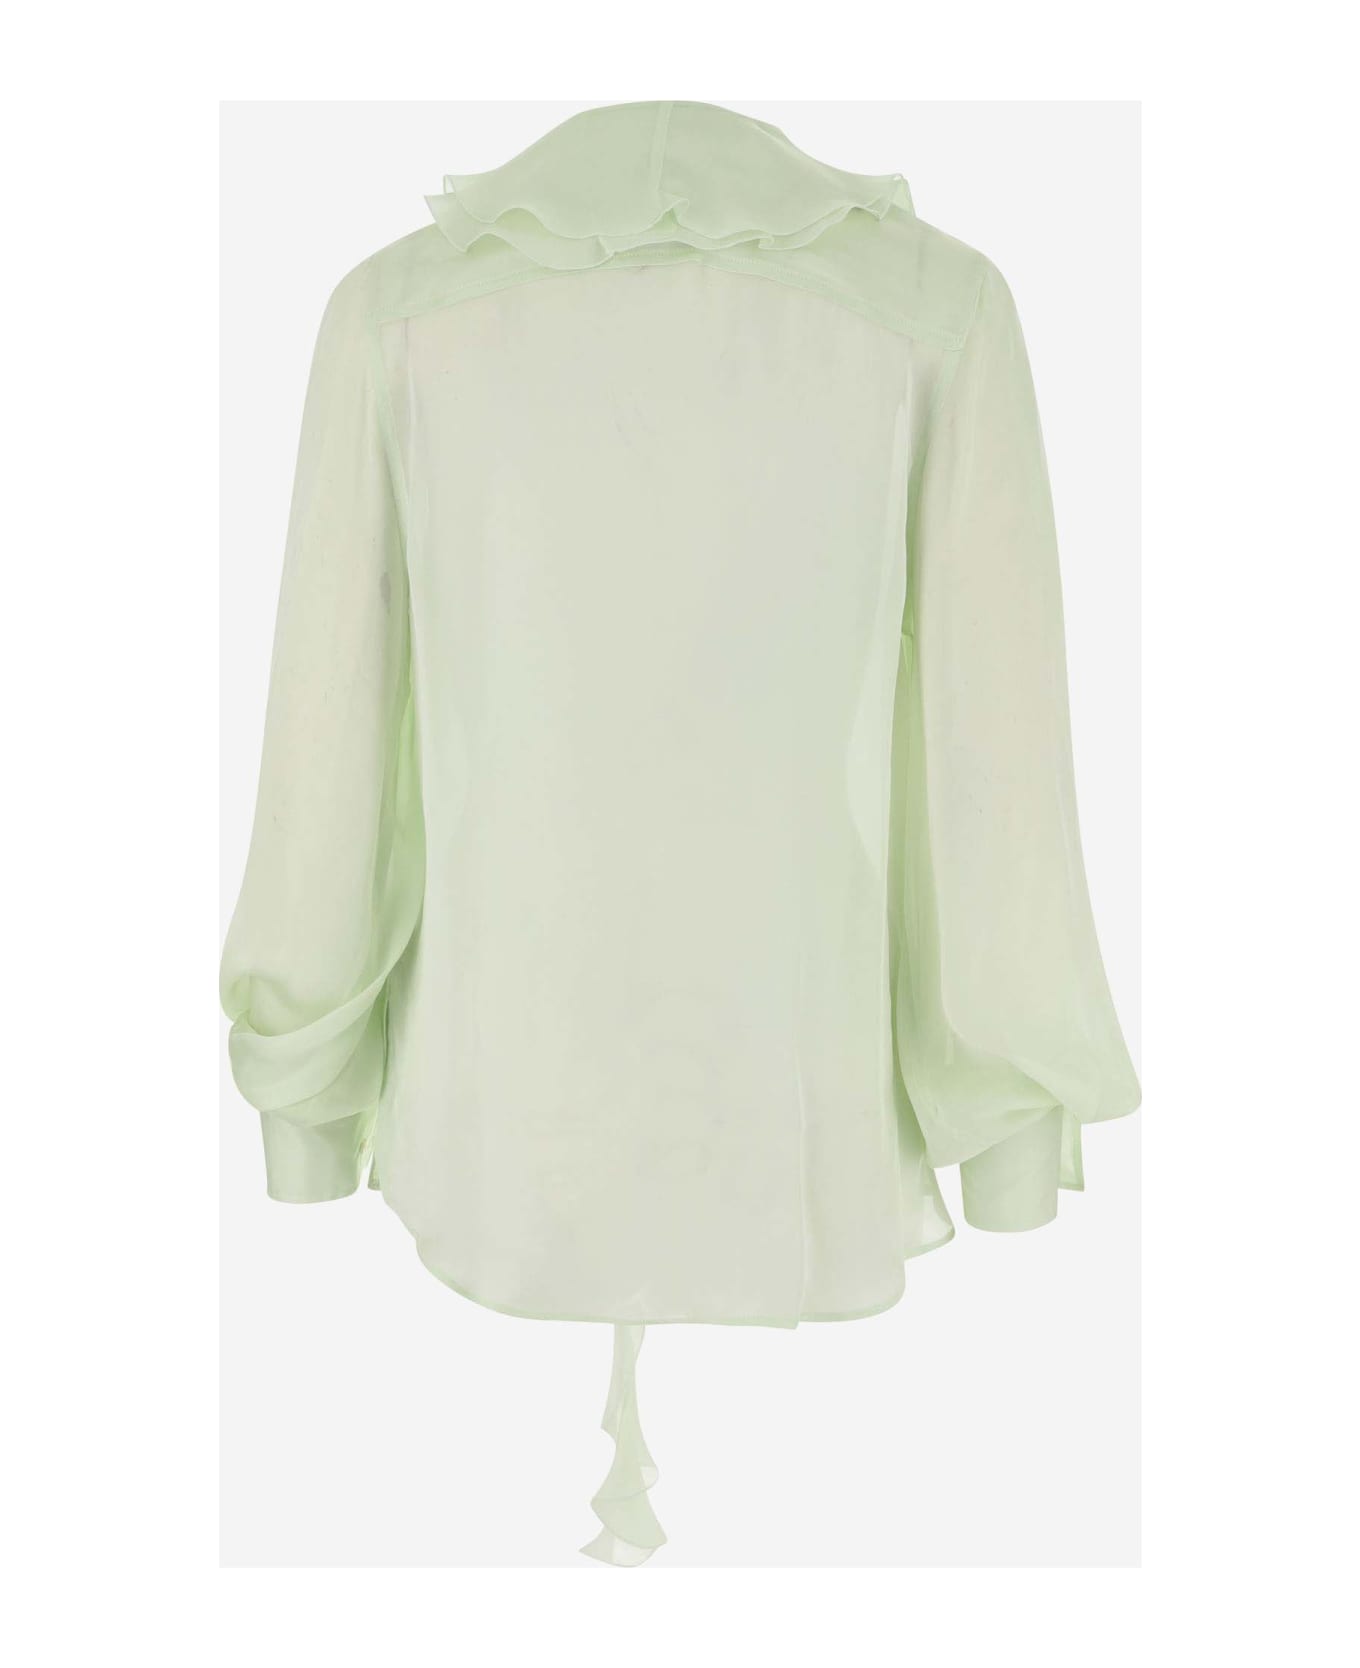 Victoria Beckham Silk Shirt With Ruffles - Green